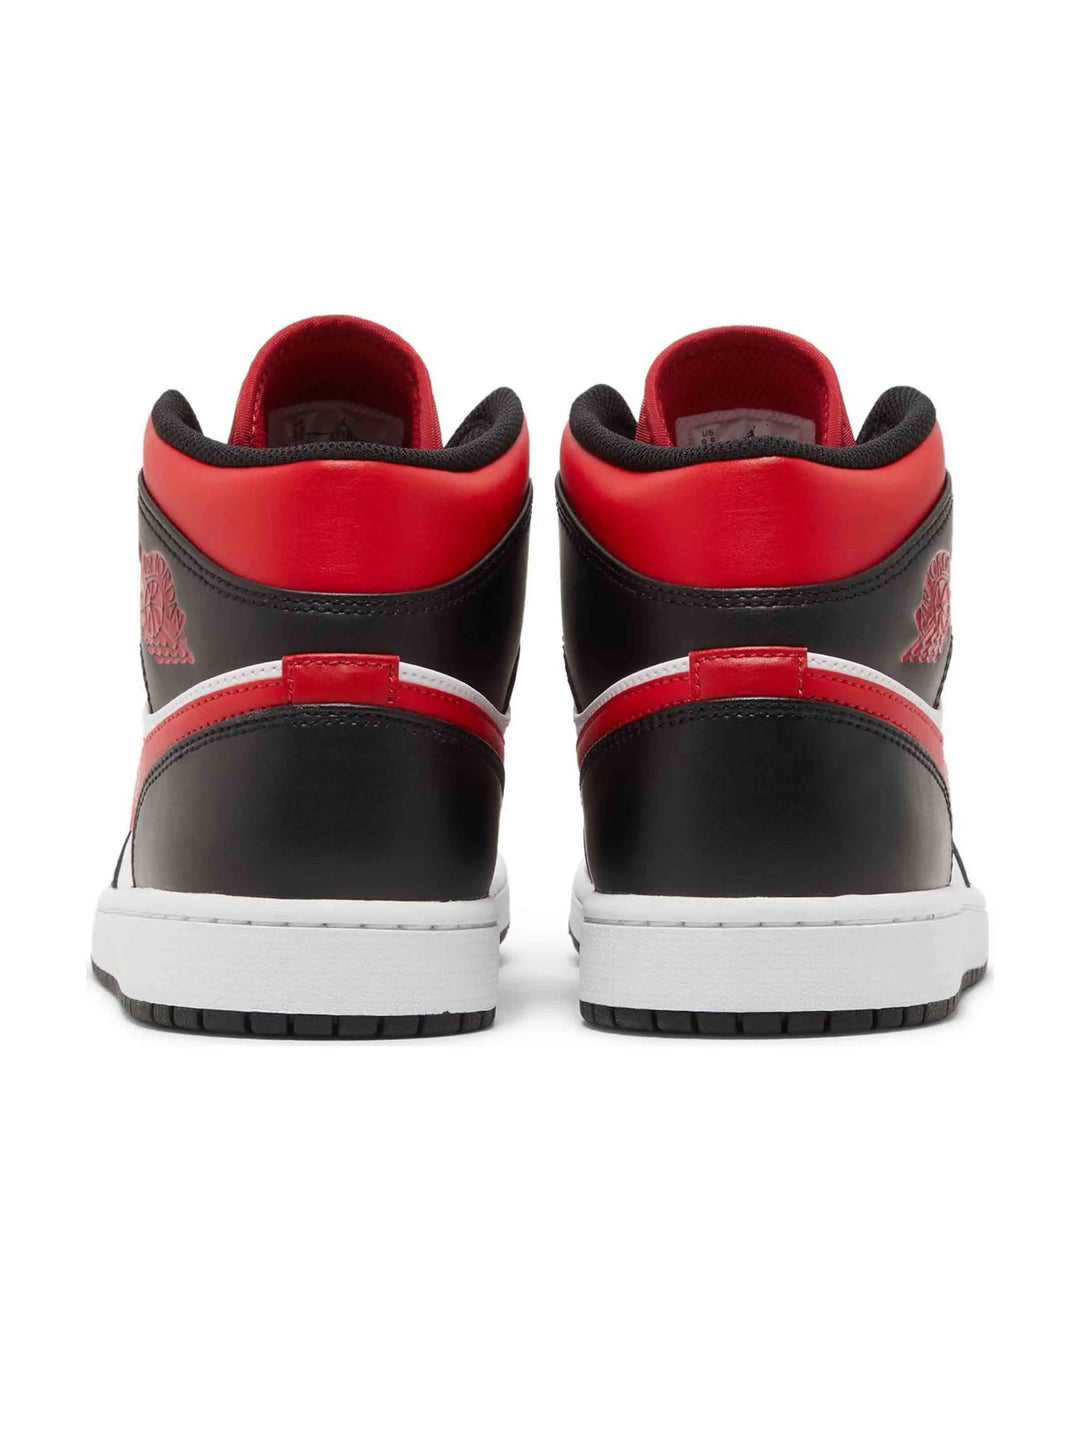 Nike Air Jordan 1 Mid Bred Toe (2022) Prior